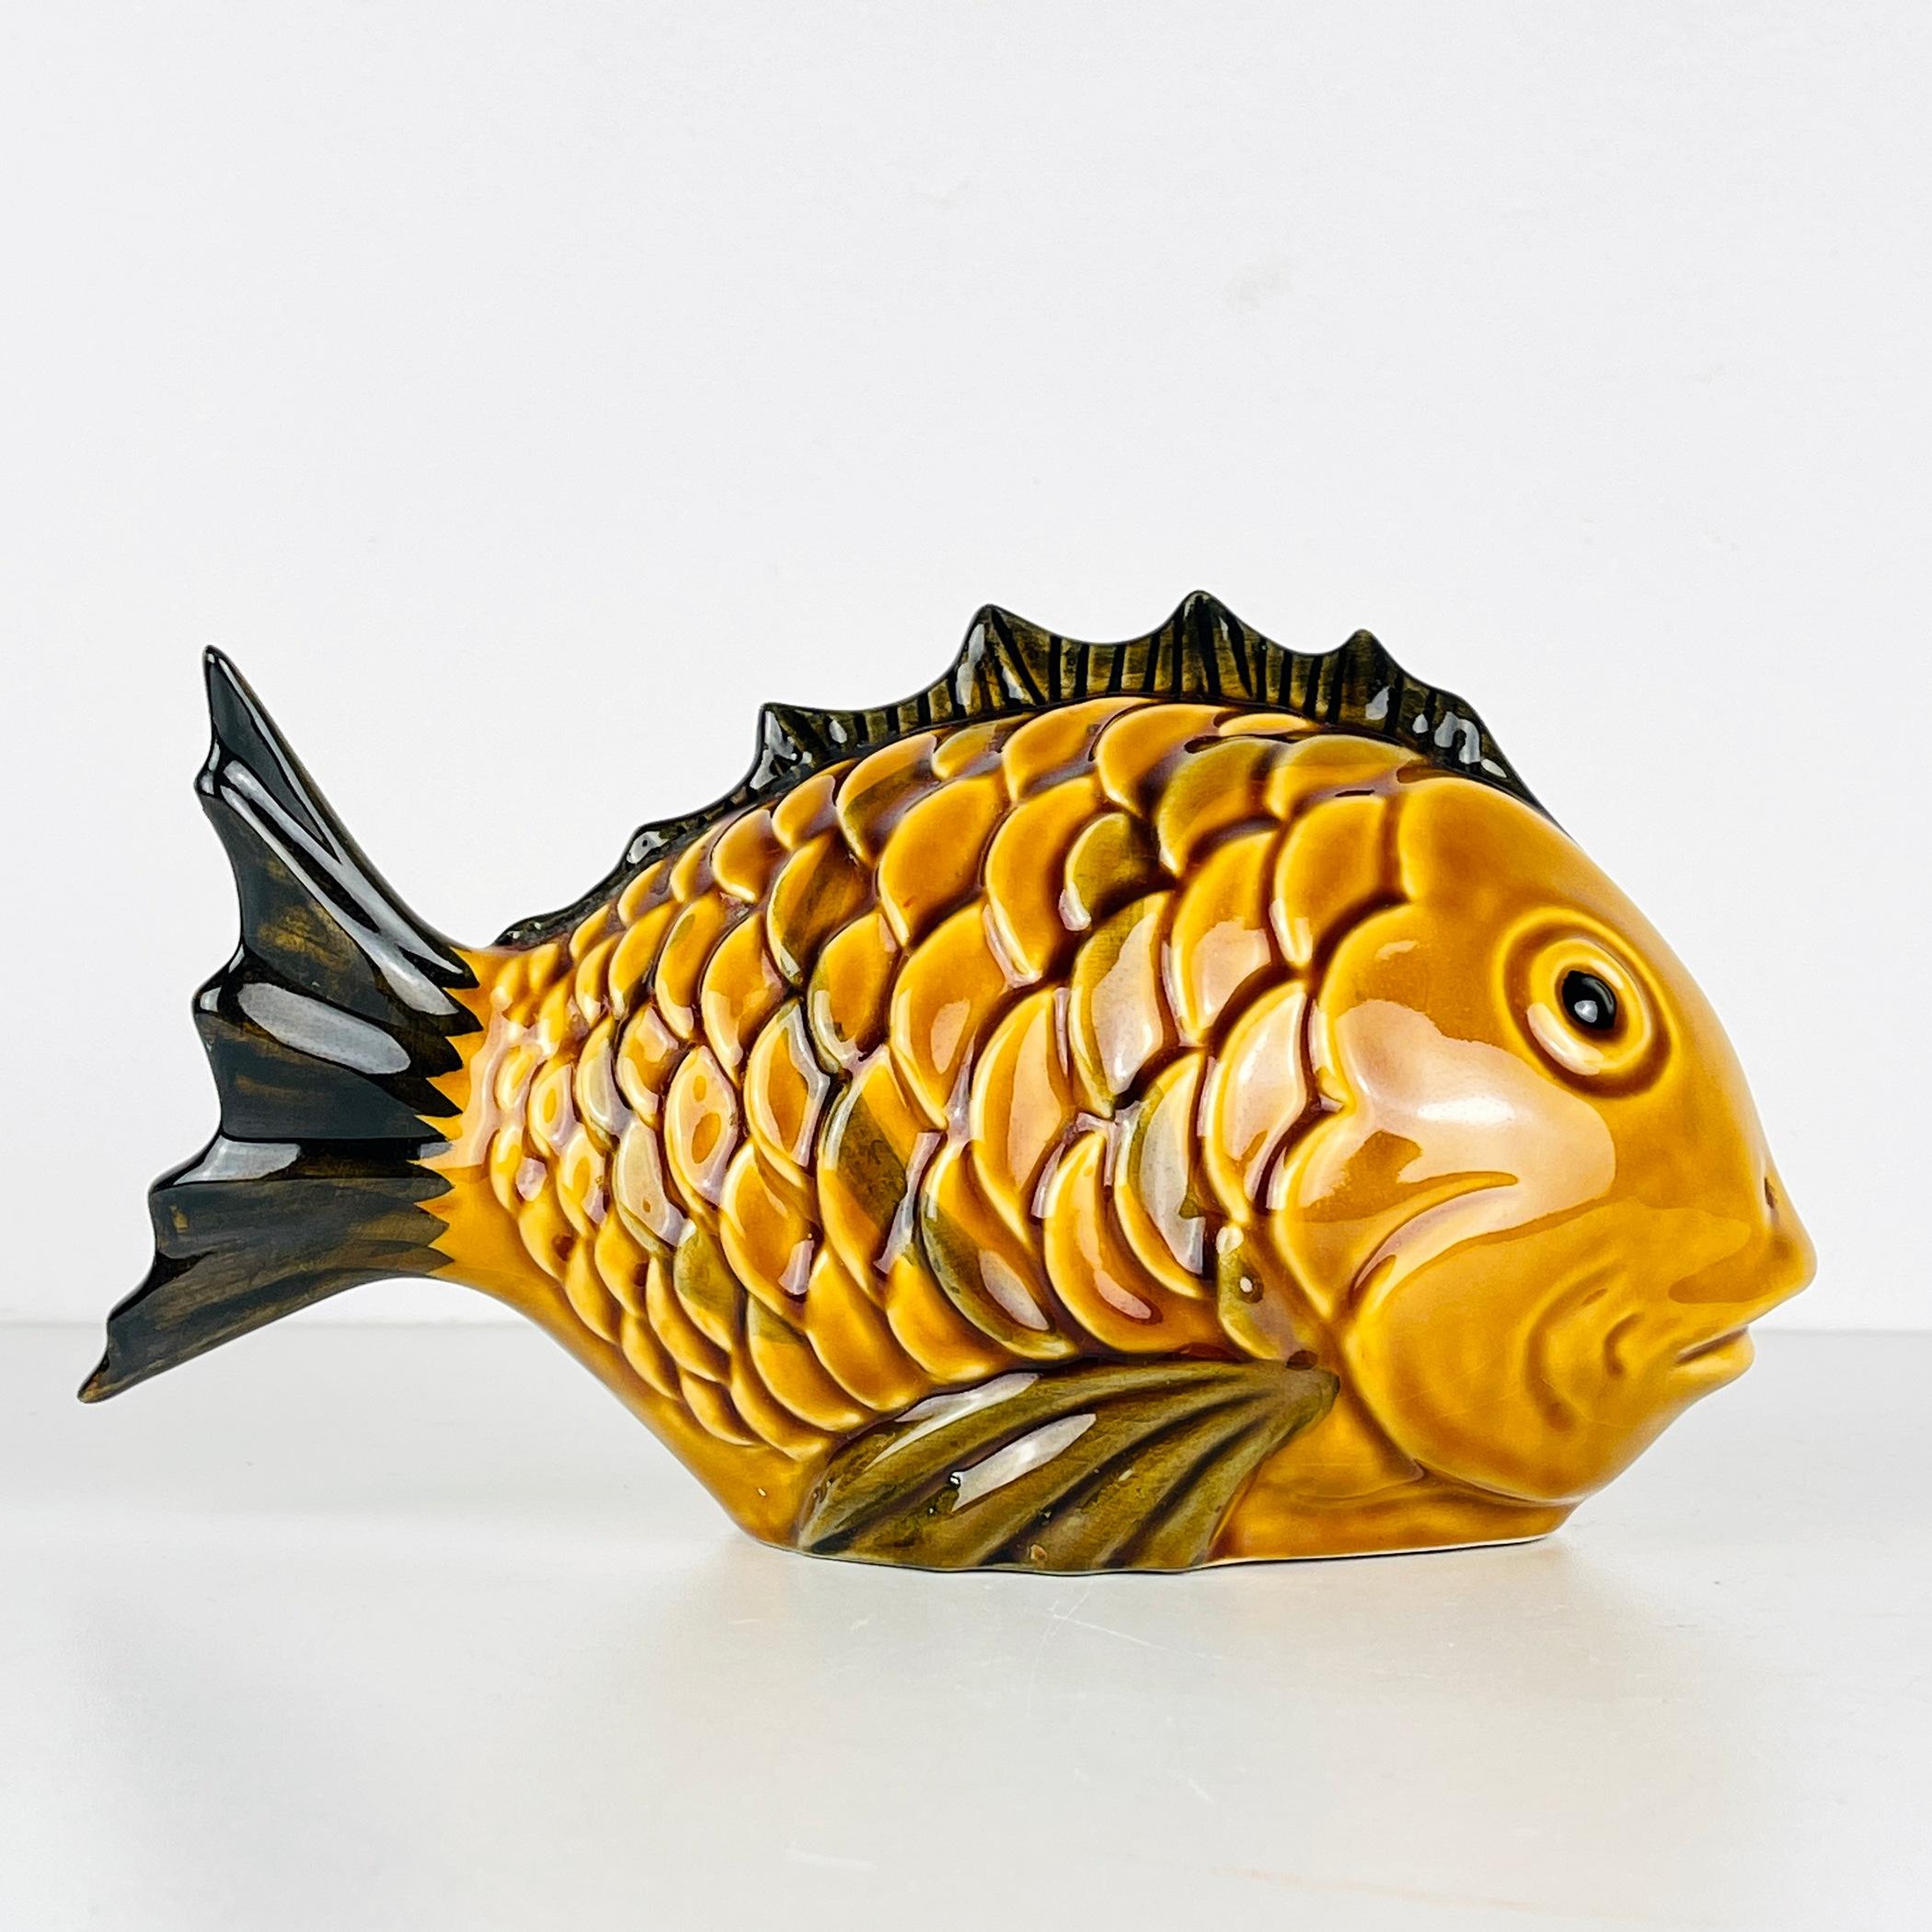 Entdecken Sie diese charmante Vintage-Keramikfigur, einen entzückenden Fisch, der in den 1970er Jahren in den Werkstätten der portugiesischen Kunsthandwerker entstand. Trotz der Zeit hat es seinen Reiz bewahrt und ist in sehr gutem Zustand. Dieses